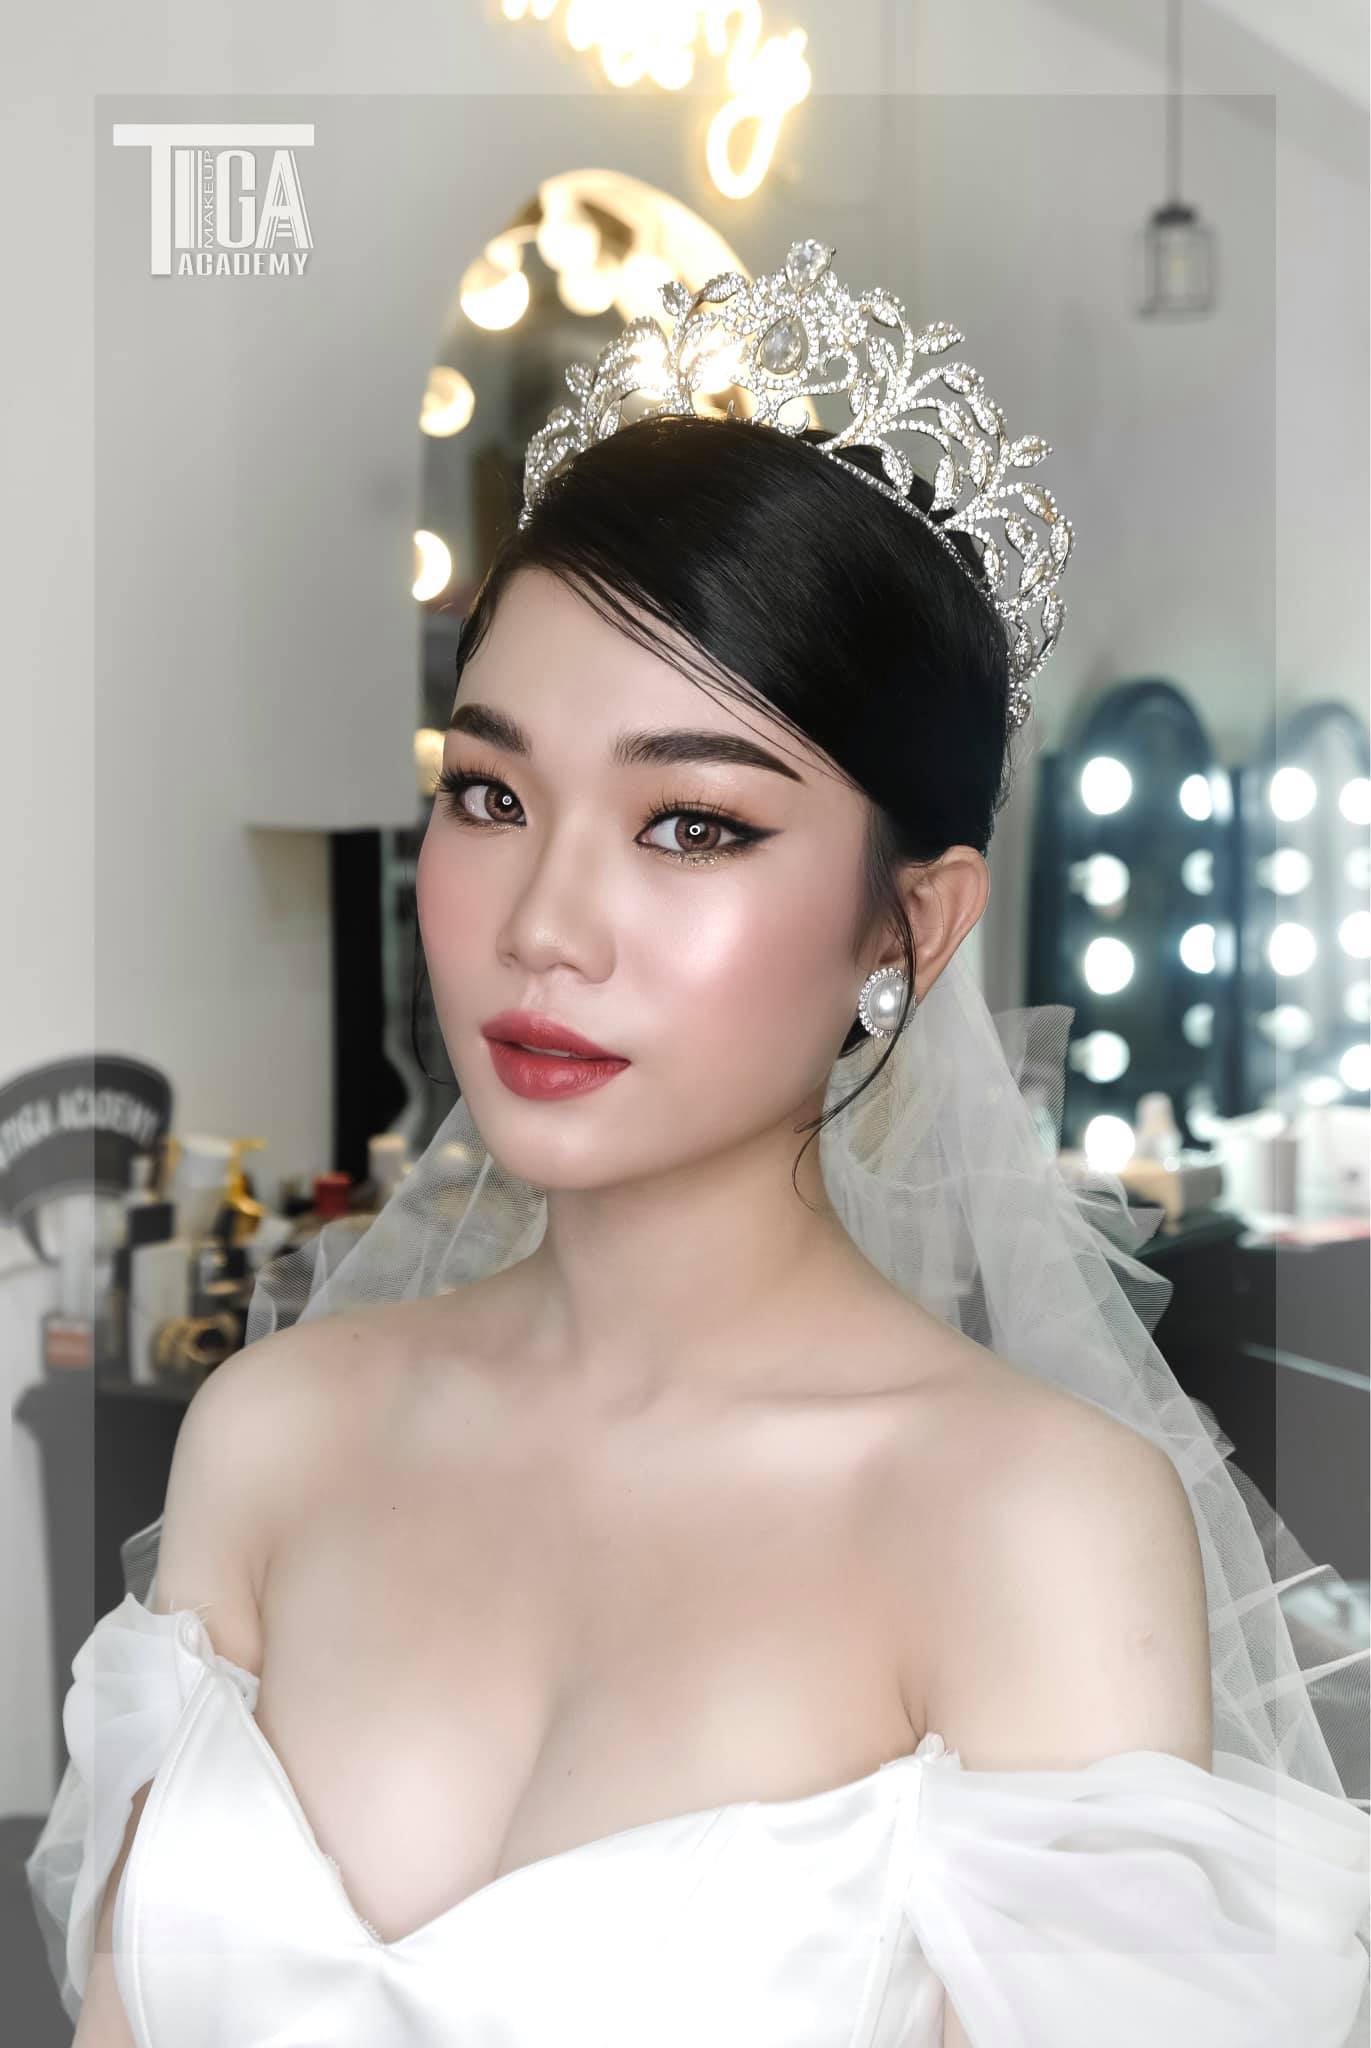 Top 5 tiệm trang điểm cô dâu đẹp nhất tại Vĩnh Long -  Tiga Make Up (Lê Kim Trang Make Up)